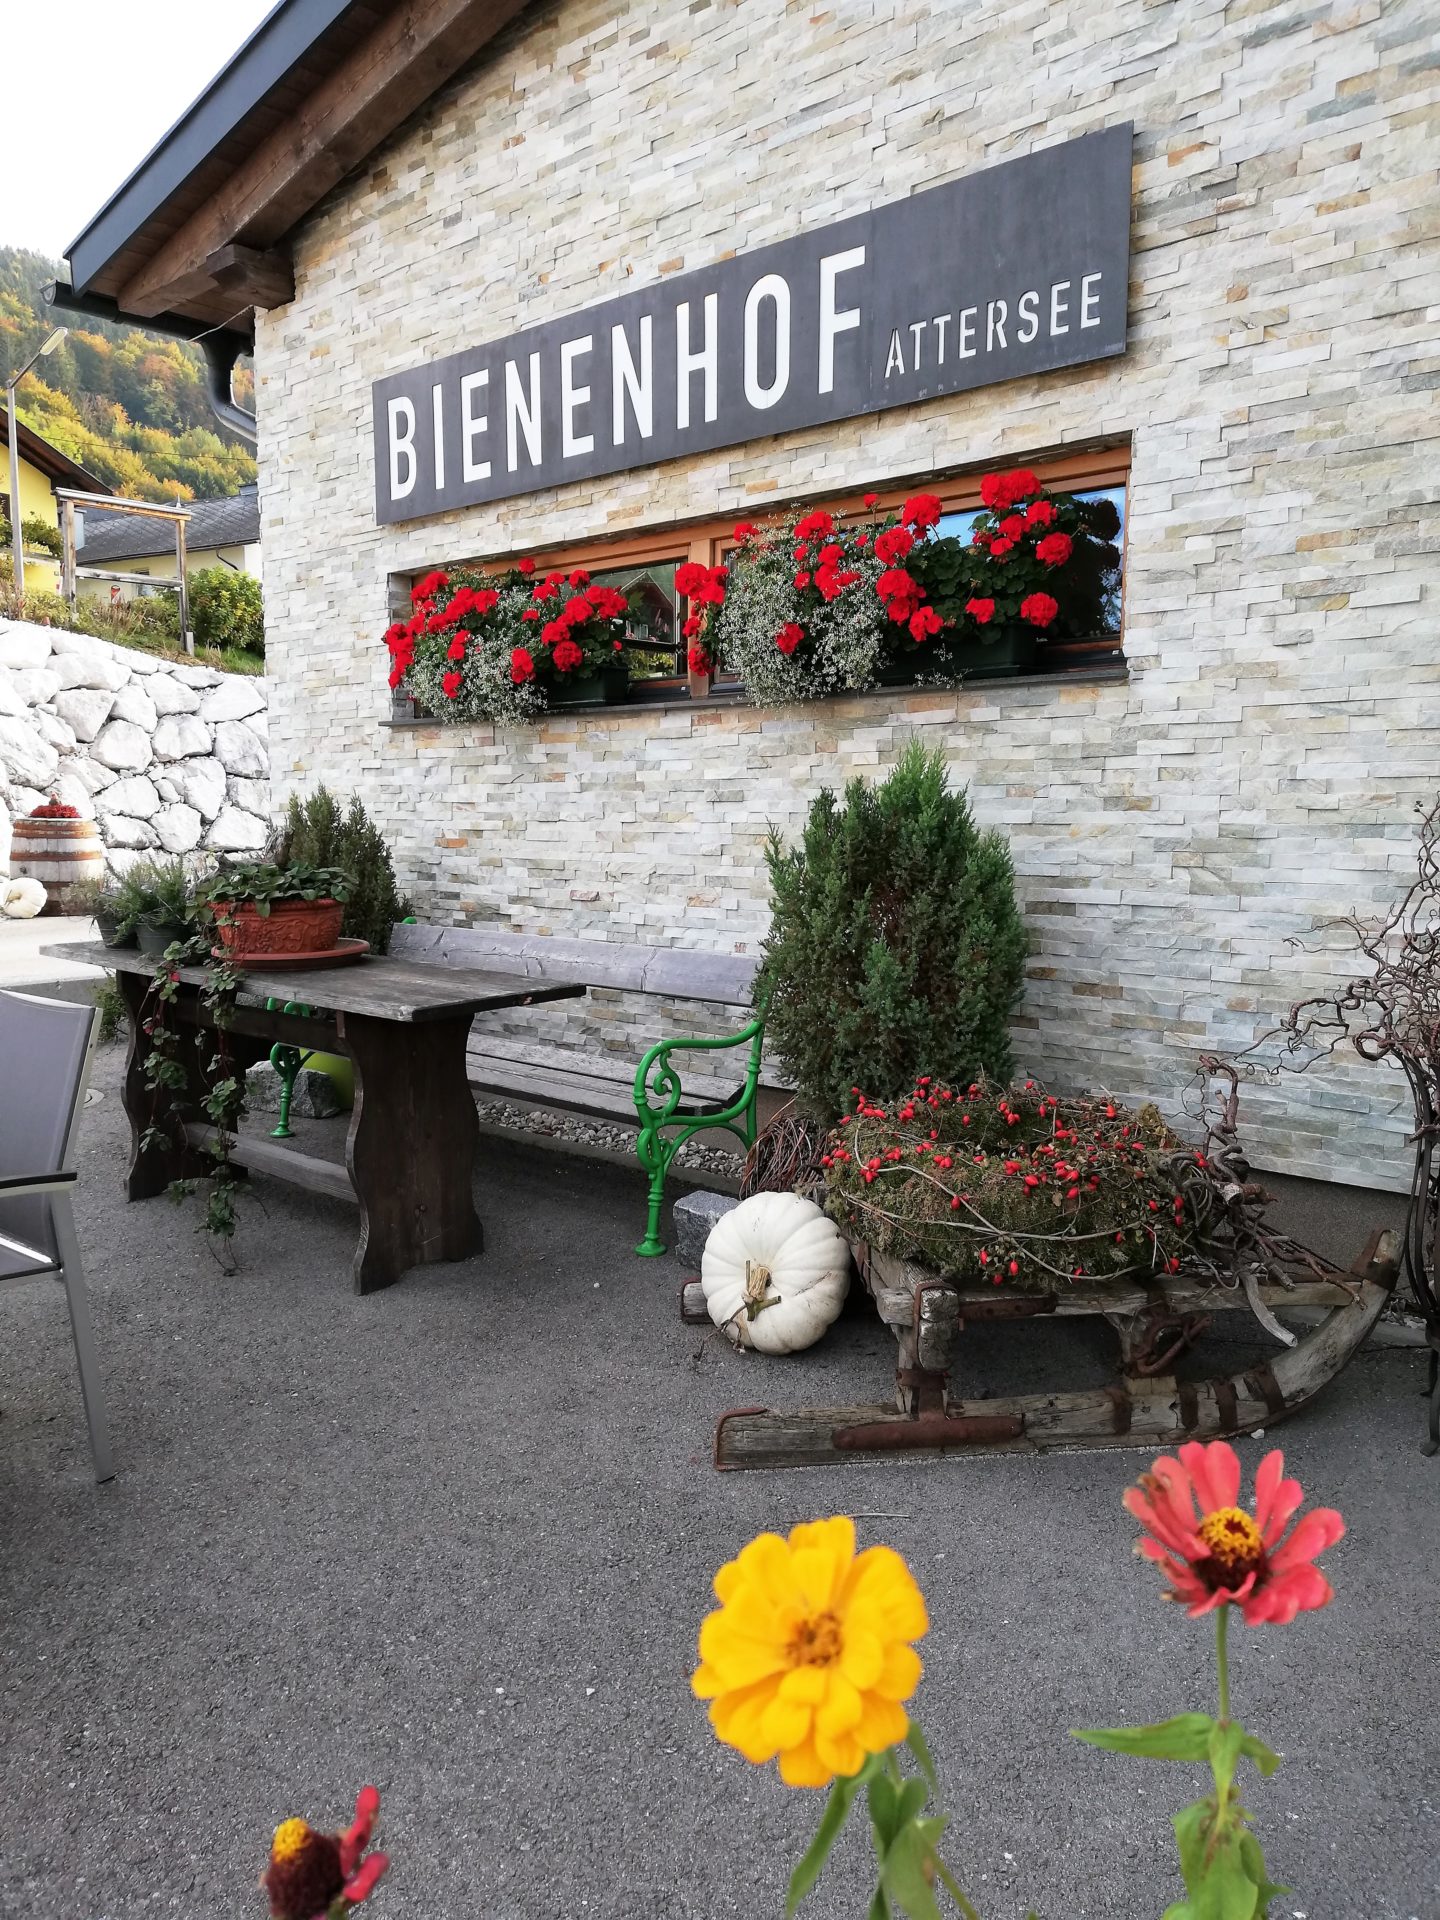 Fassade des Bienenhofs Attersee, mit Blumen geschmückt und einer Sitzbank mit Tisch im Vordergrund